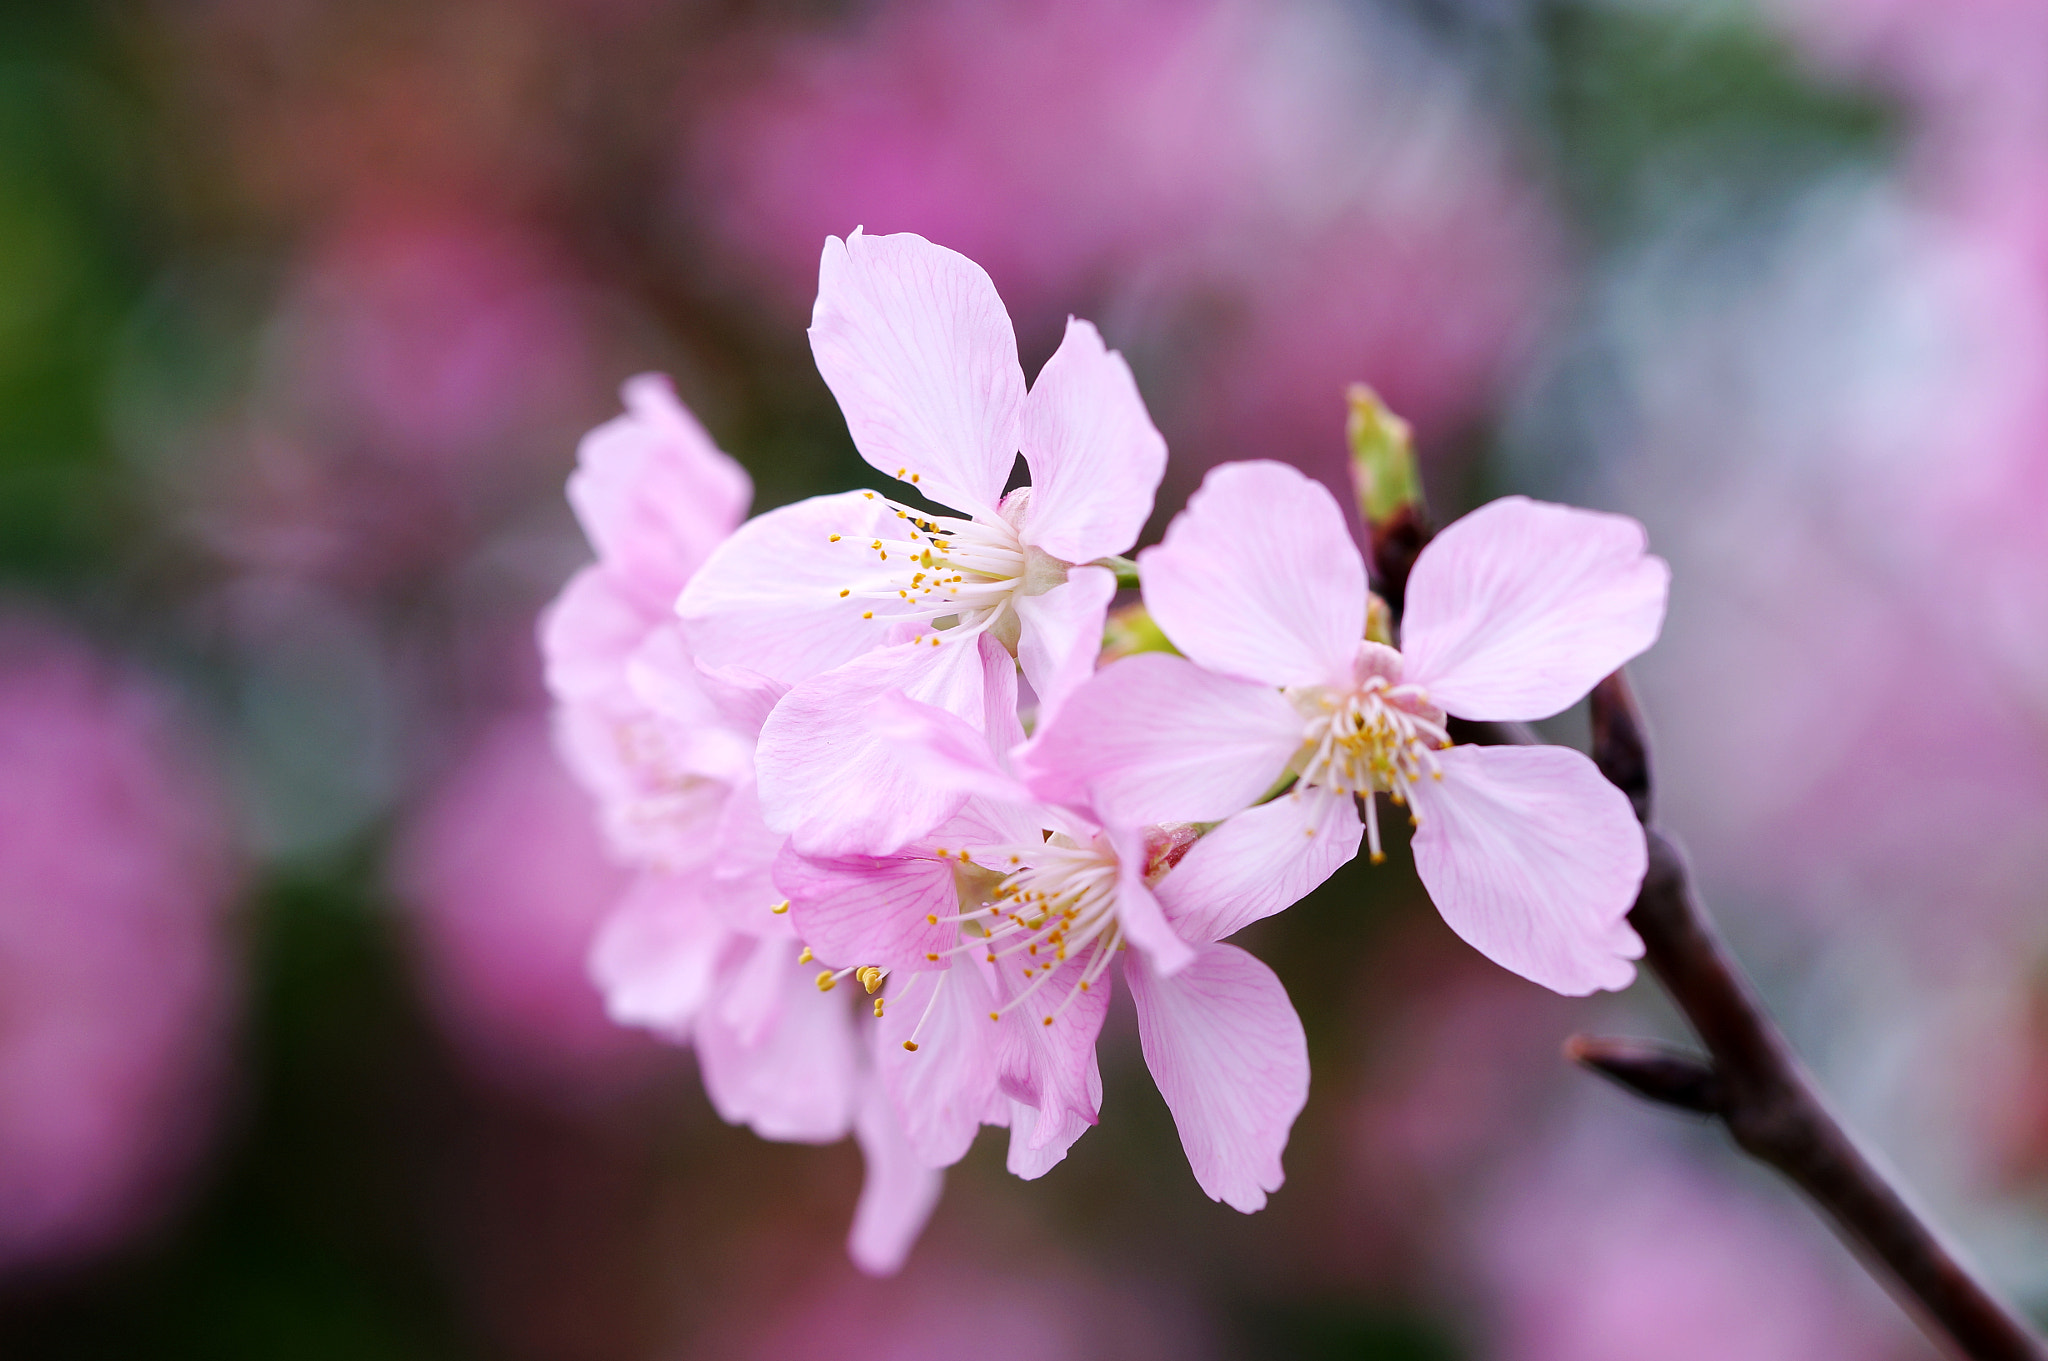 Sony Alpha NEX-6 + Sony FE 90mm F2.8 Macro G OSS sample photo. Cherry blossom photography